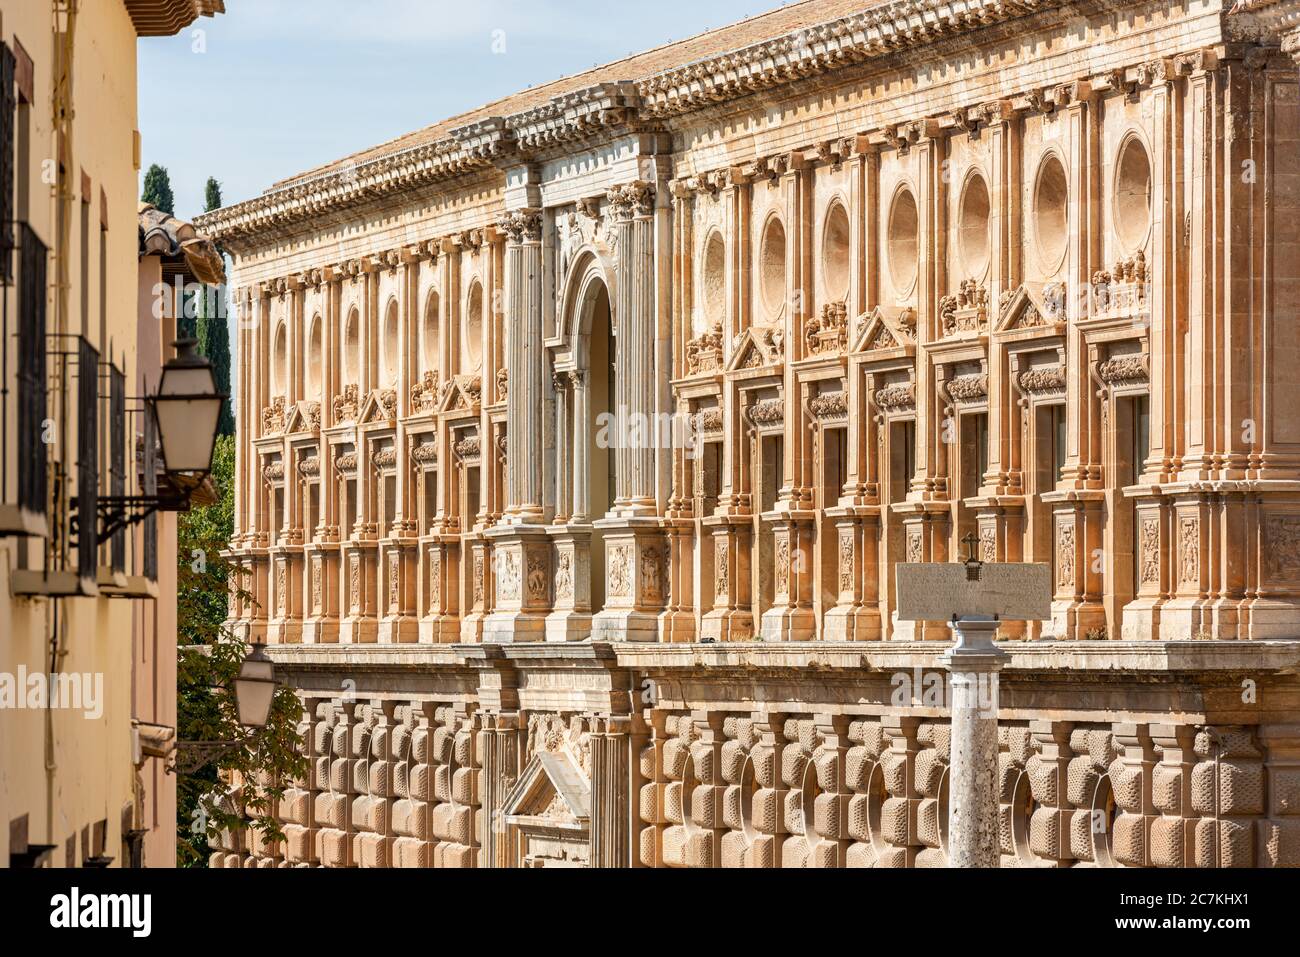 Die Südfassade des Palastes von Karl V. in Die Alhambra im späten Nachmittag Sonnenlicht zeigt seinen Reichtum an Renaissance-Detail und rustikales Mauerwerk Stockfoto